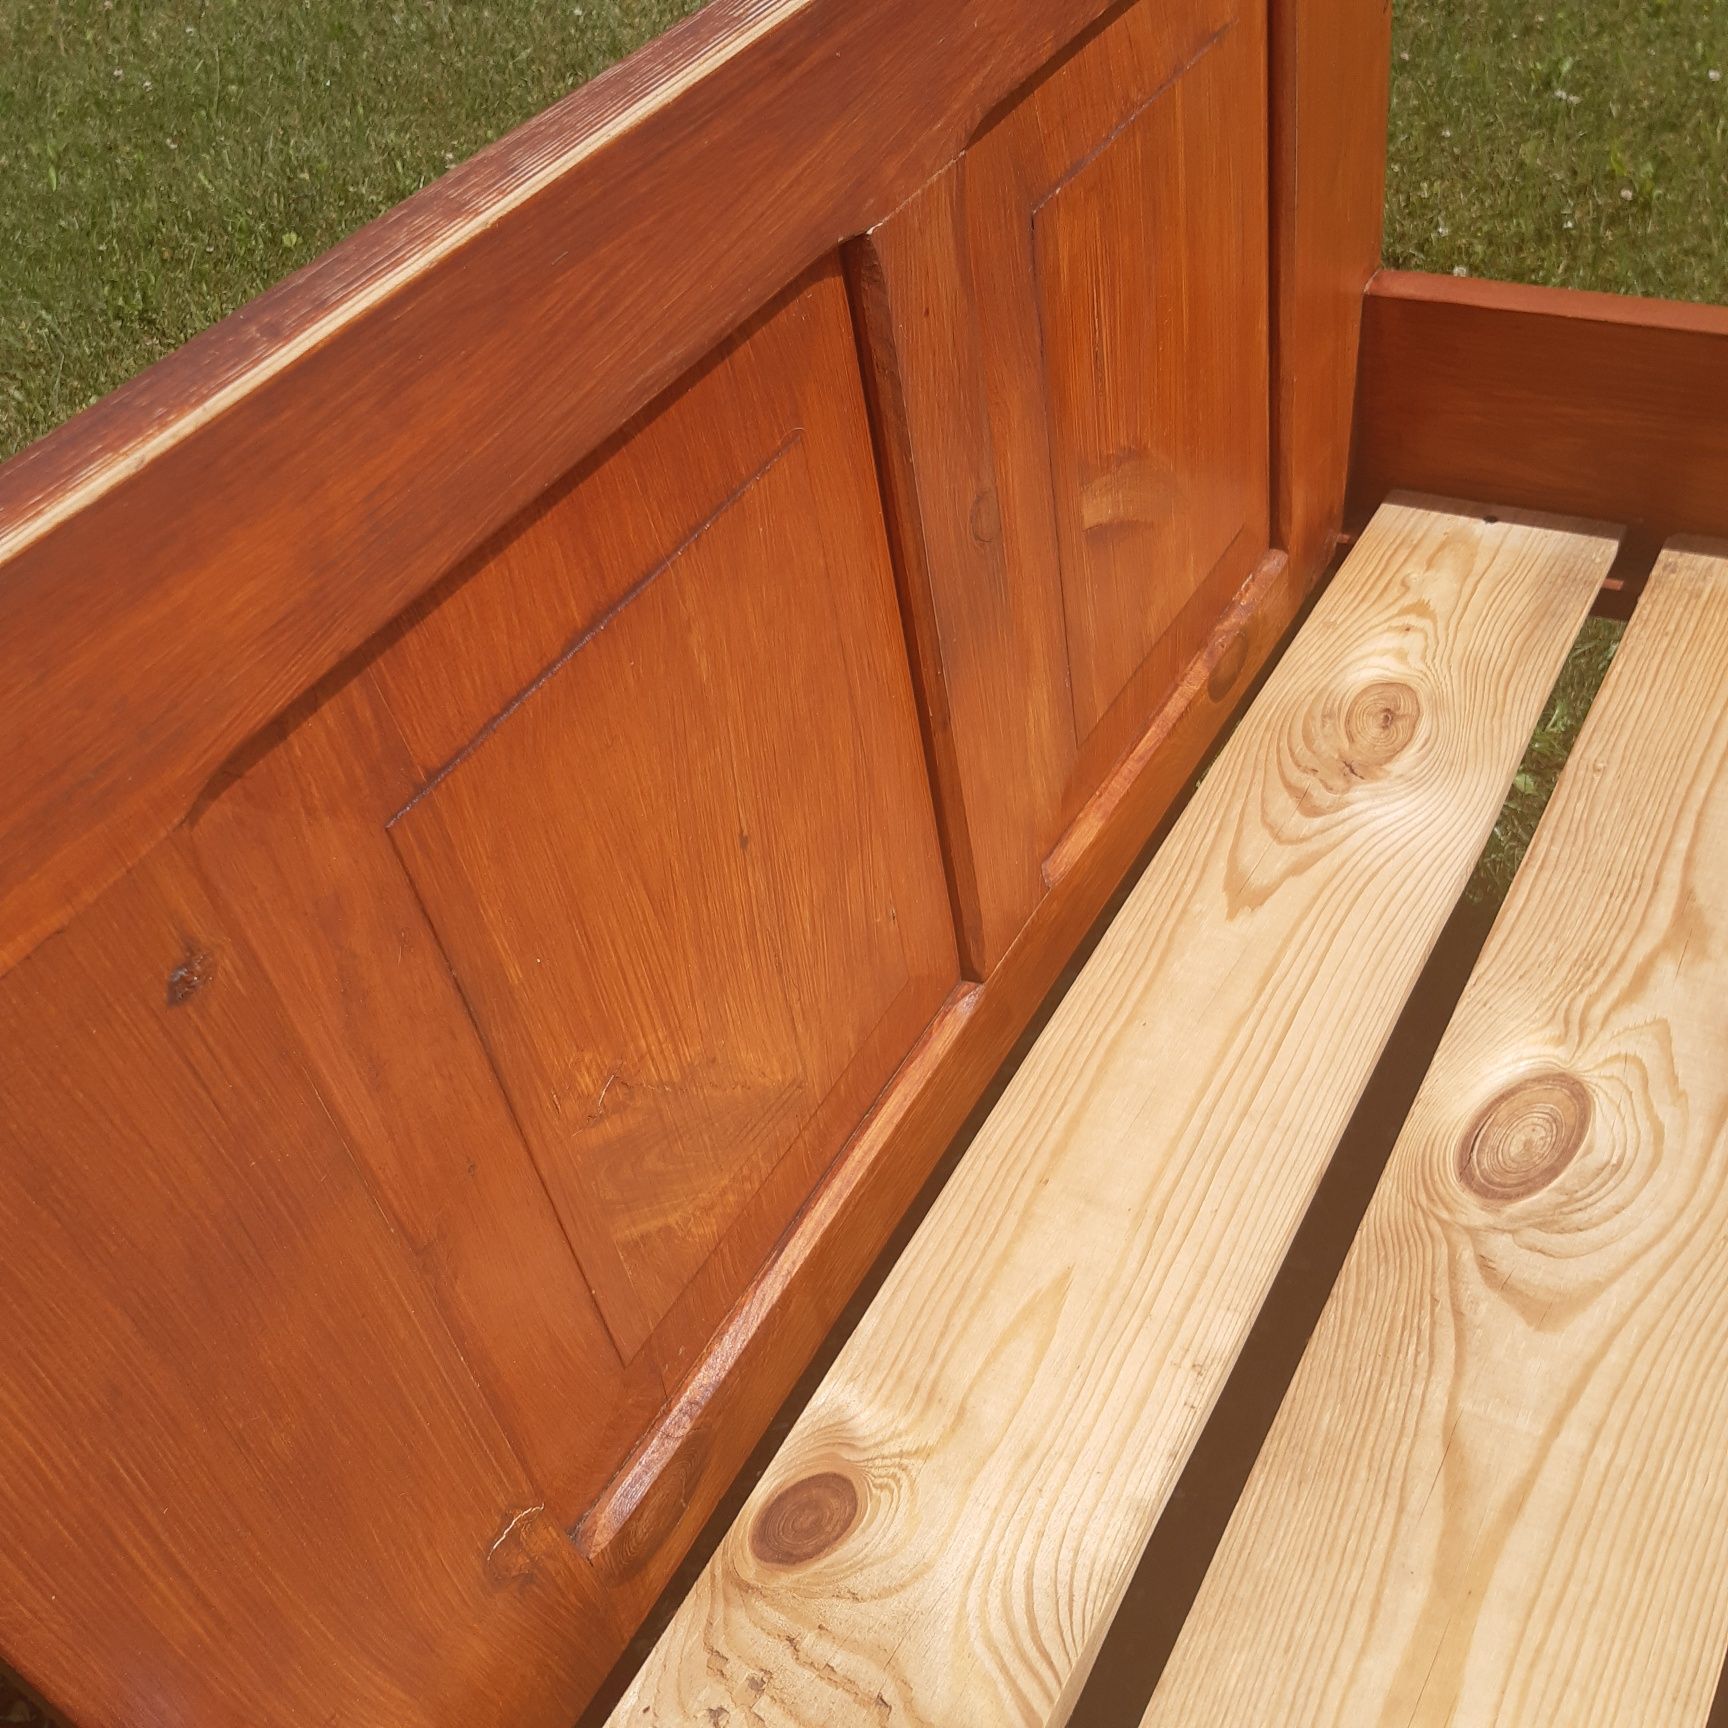 Drewniane łóżko Bardzo solidne 190x90